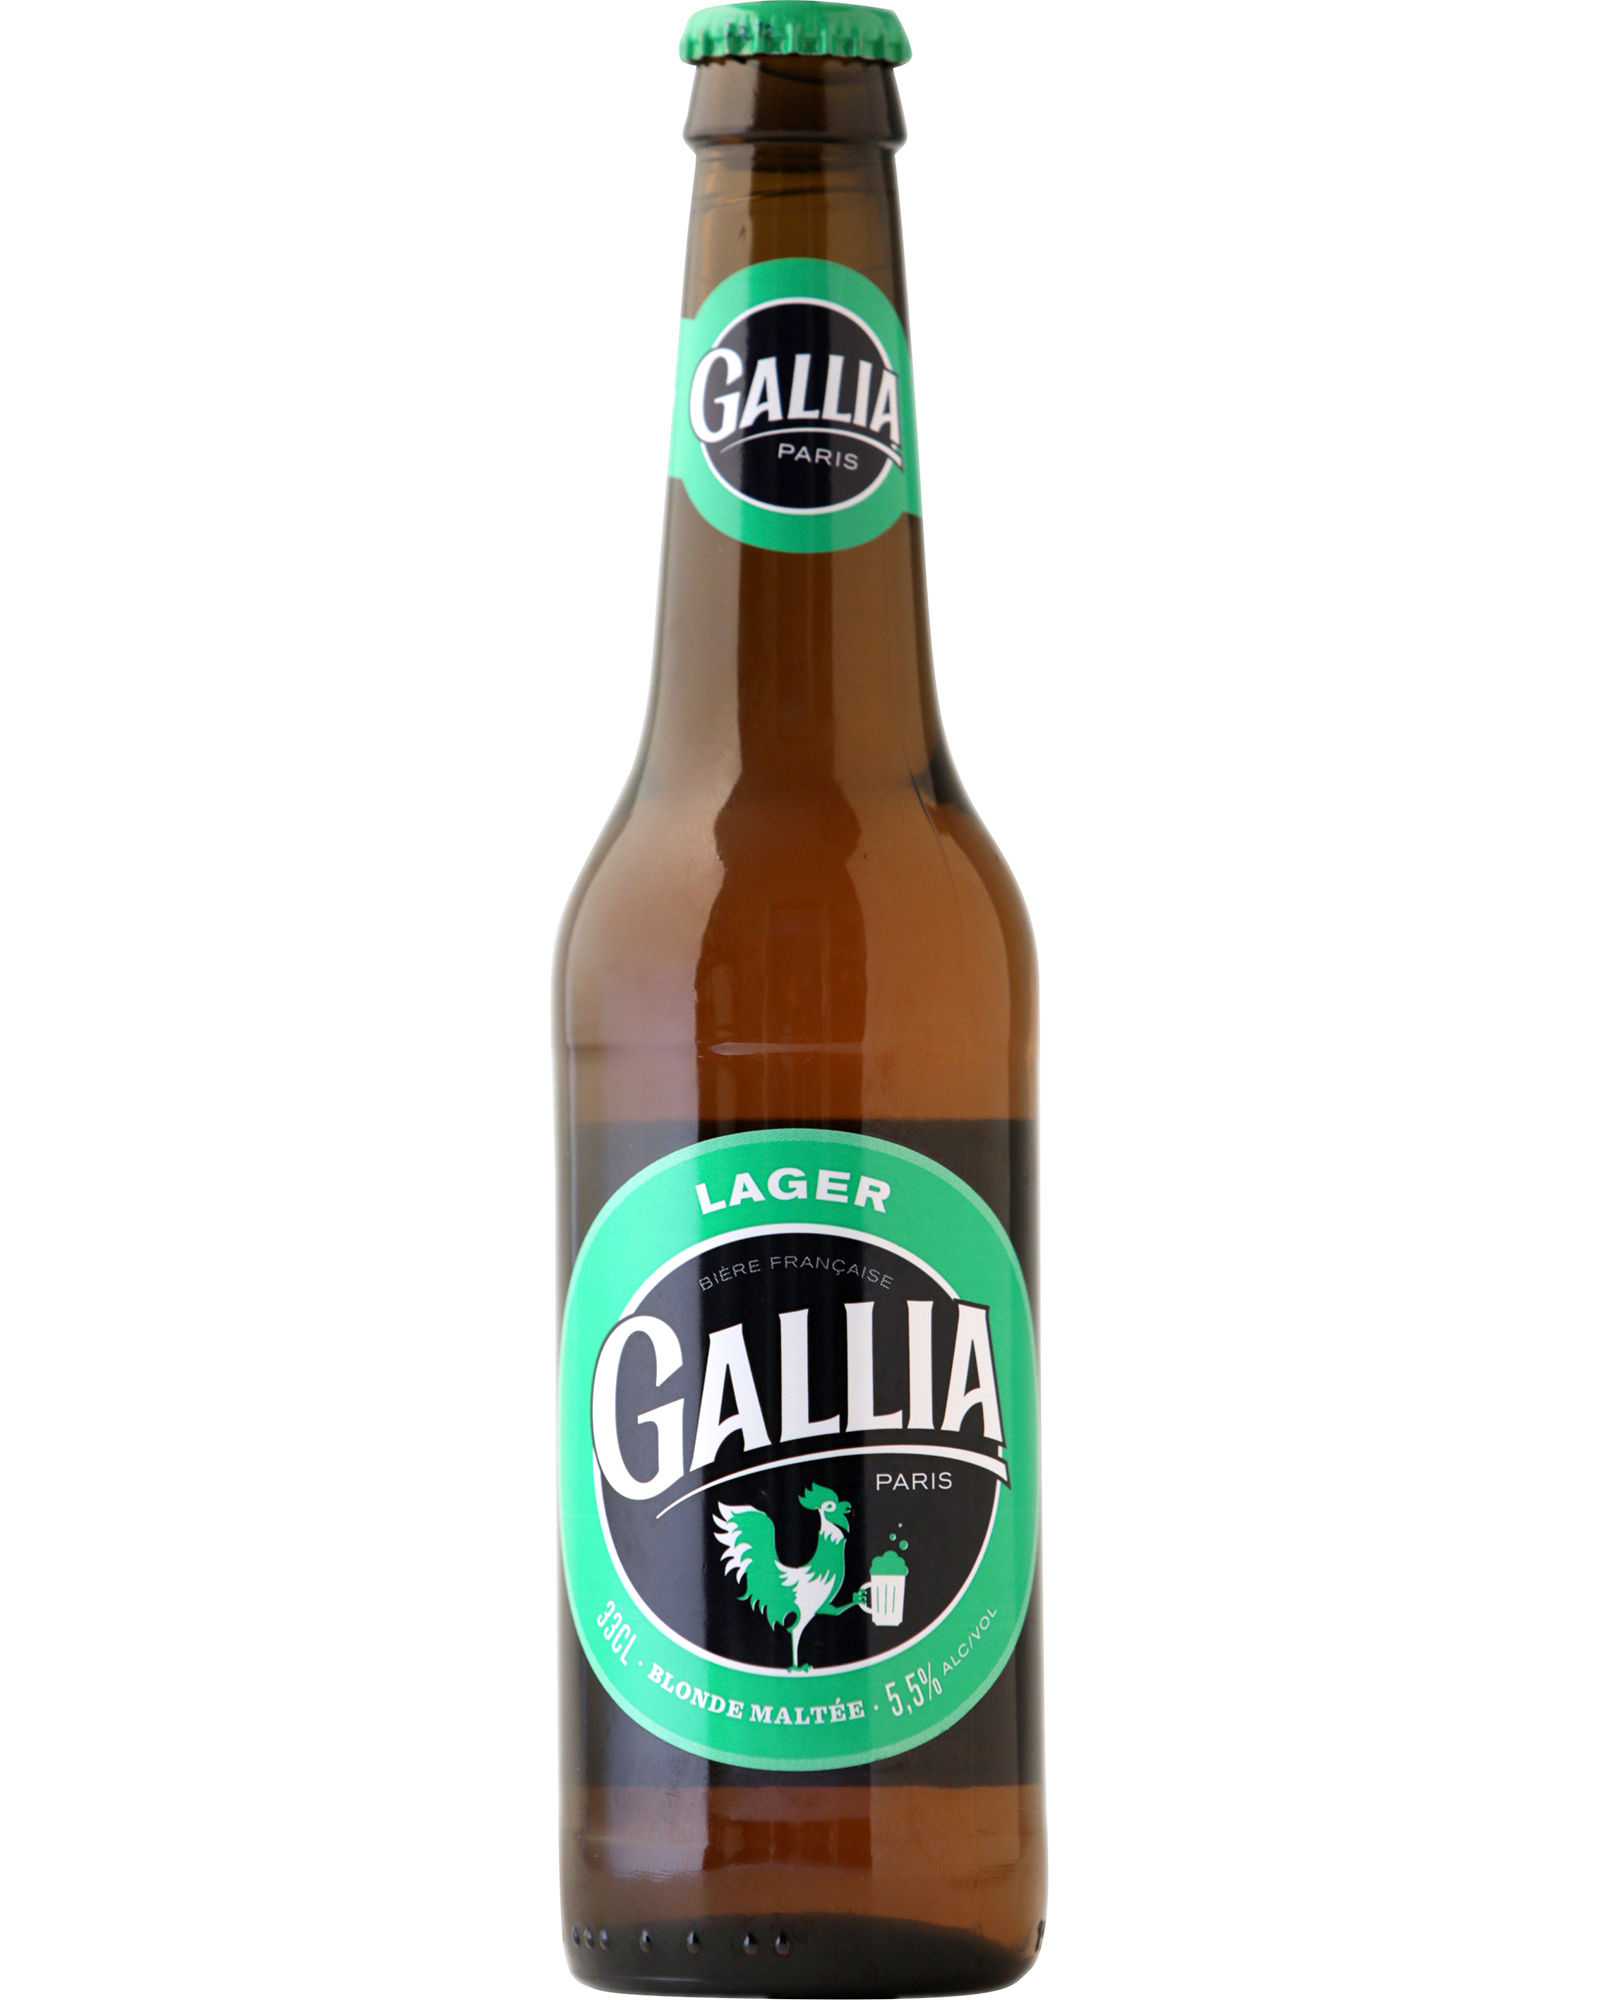 Gallia Lager